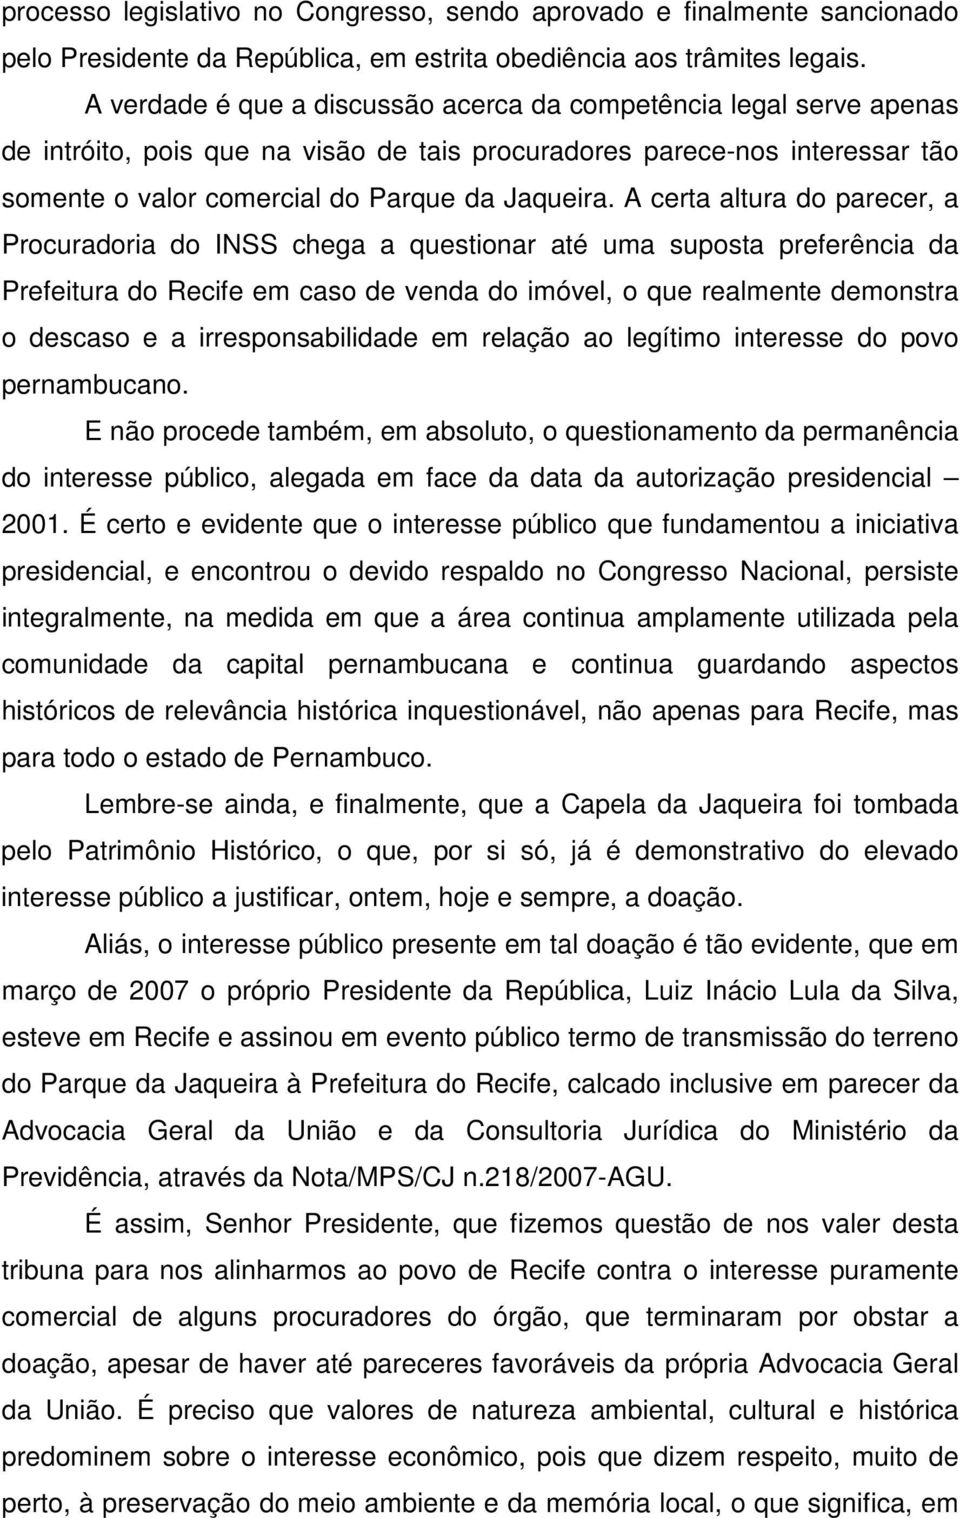 A certa altura do parecer, a Procuradoria do INSS chega a questionar até uma suposta preferência da Prefeitura do Recife em caso de venda do imóvel, o que realmente demonstra o descaso e a